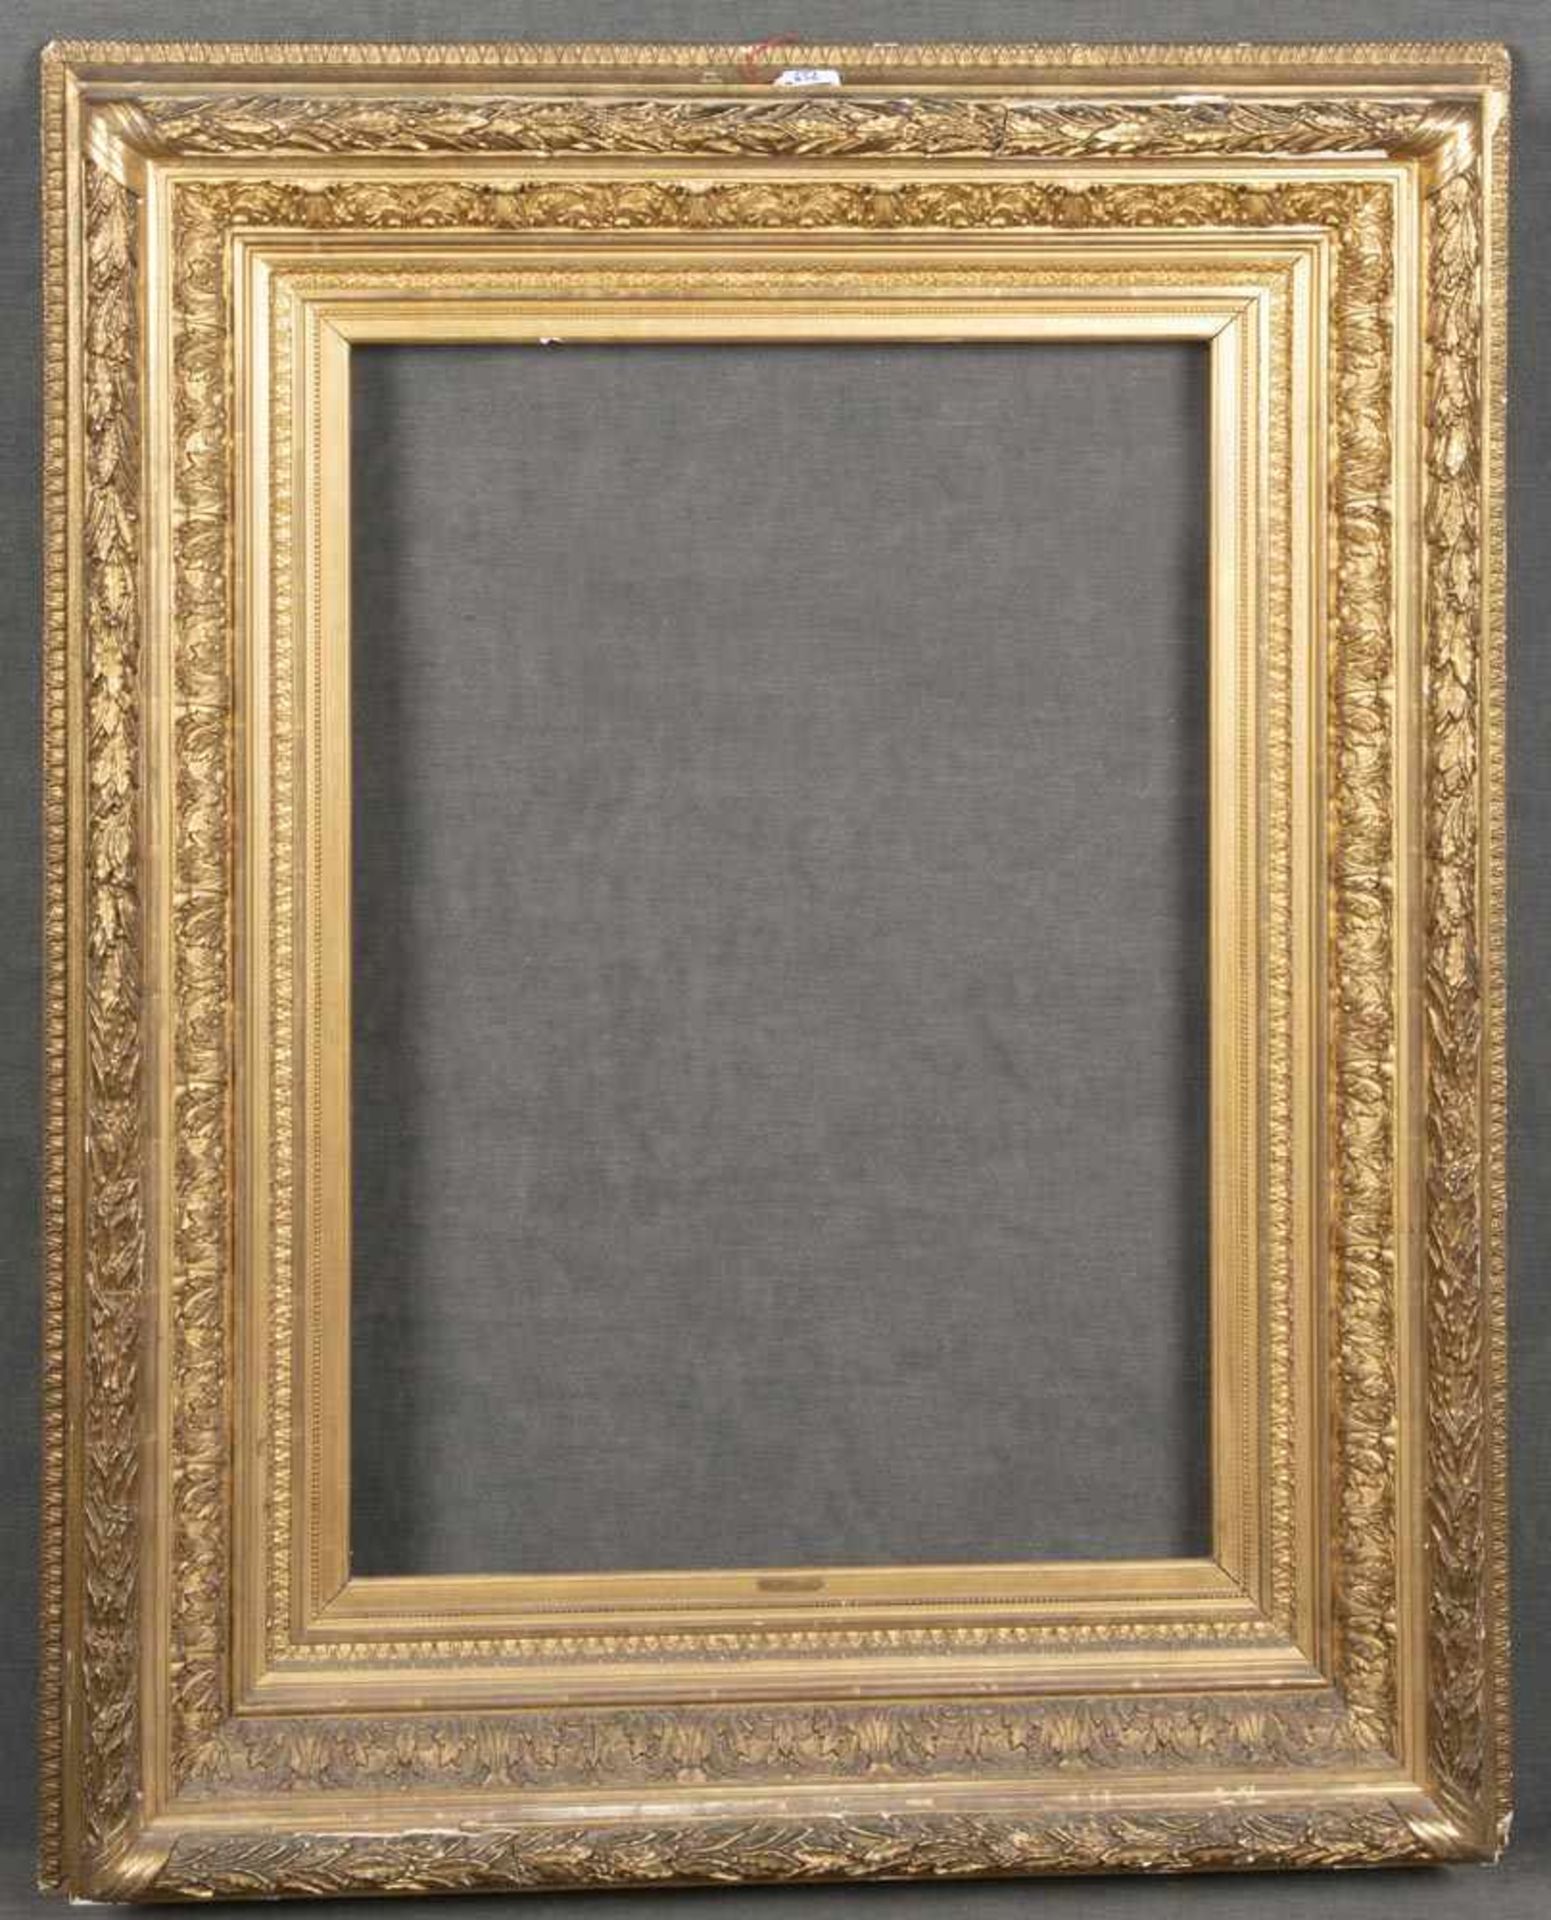 Bilderrahmen. Deutsch 19./20. Jh. Holz/Stuck, auf Kreidegrund gold gefasst, 72,5 x 51,5 cm. (